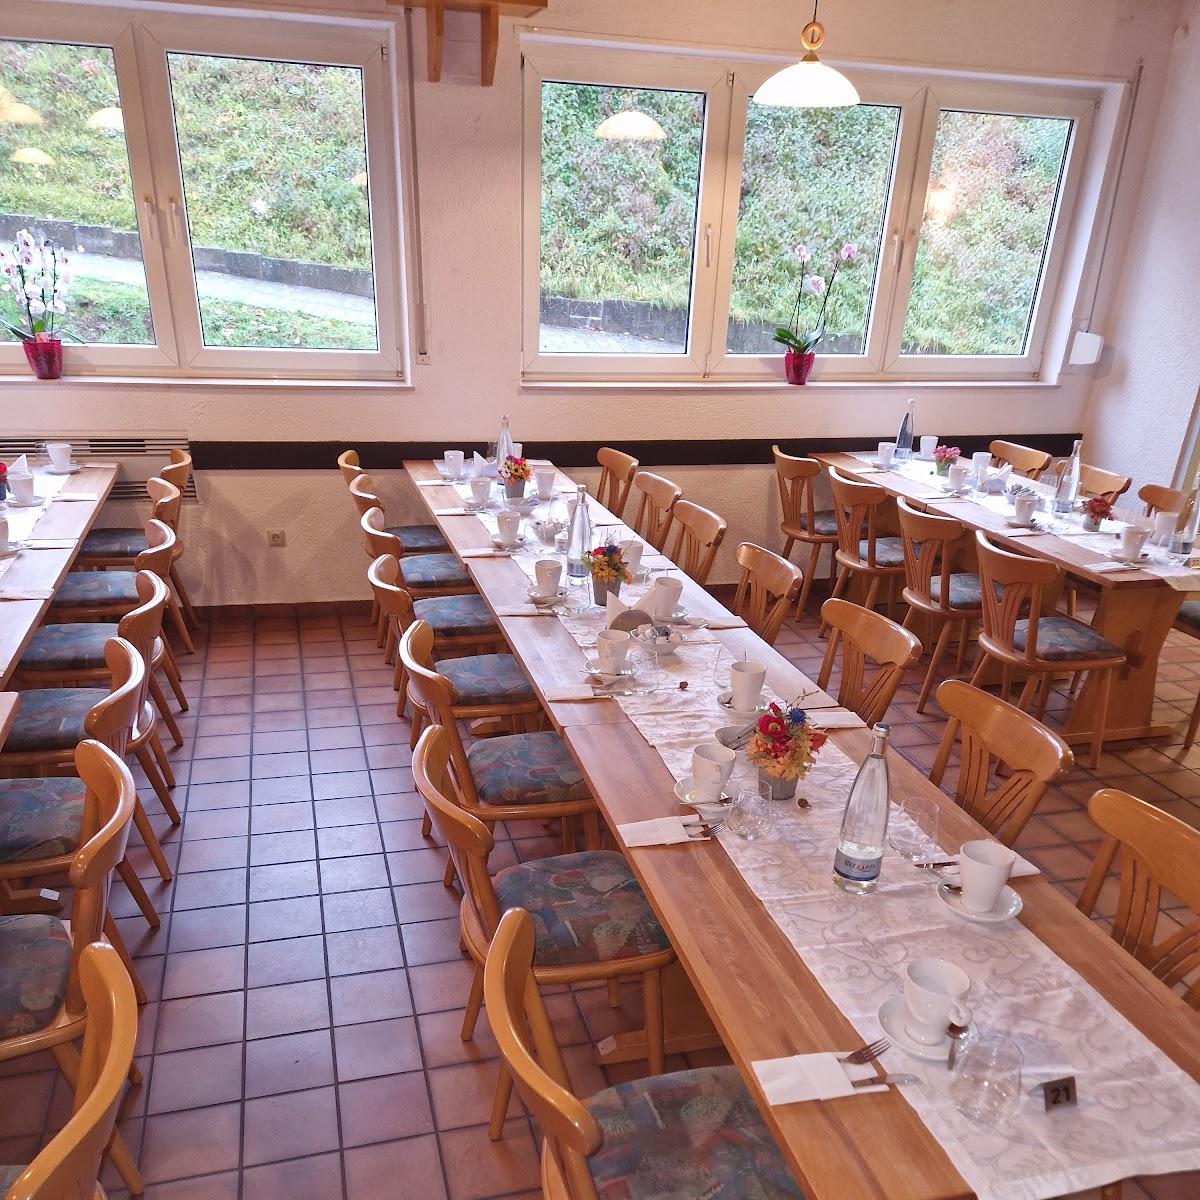 Restaurant "Yummy-grillerei" in Kottweiler-Schwanden